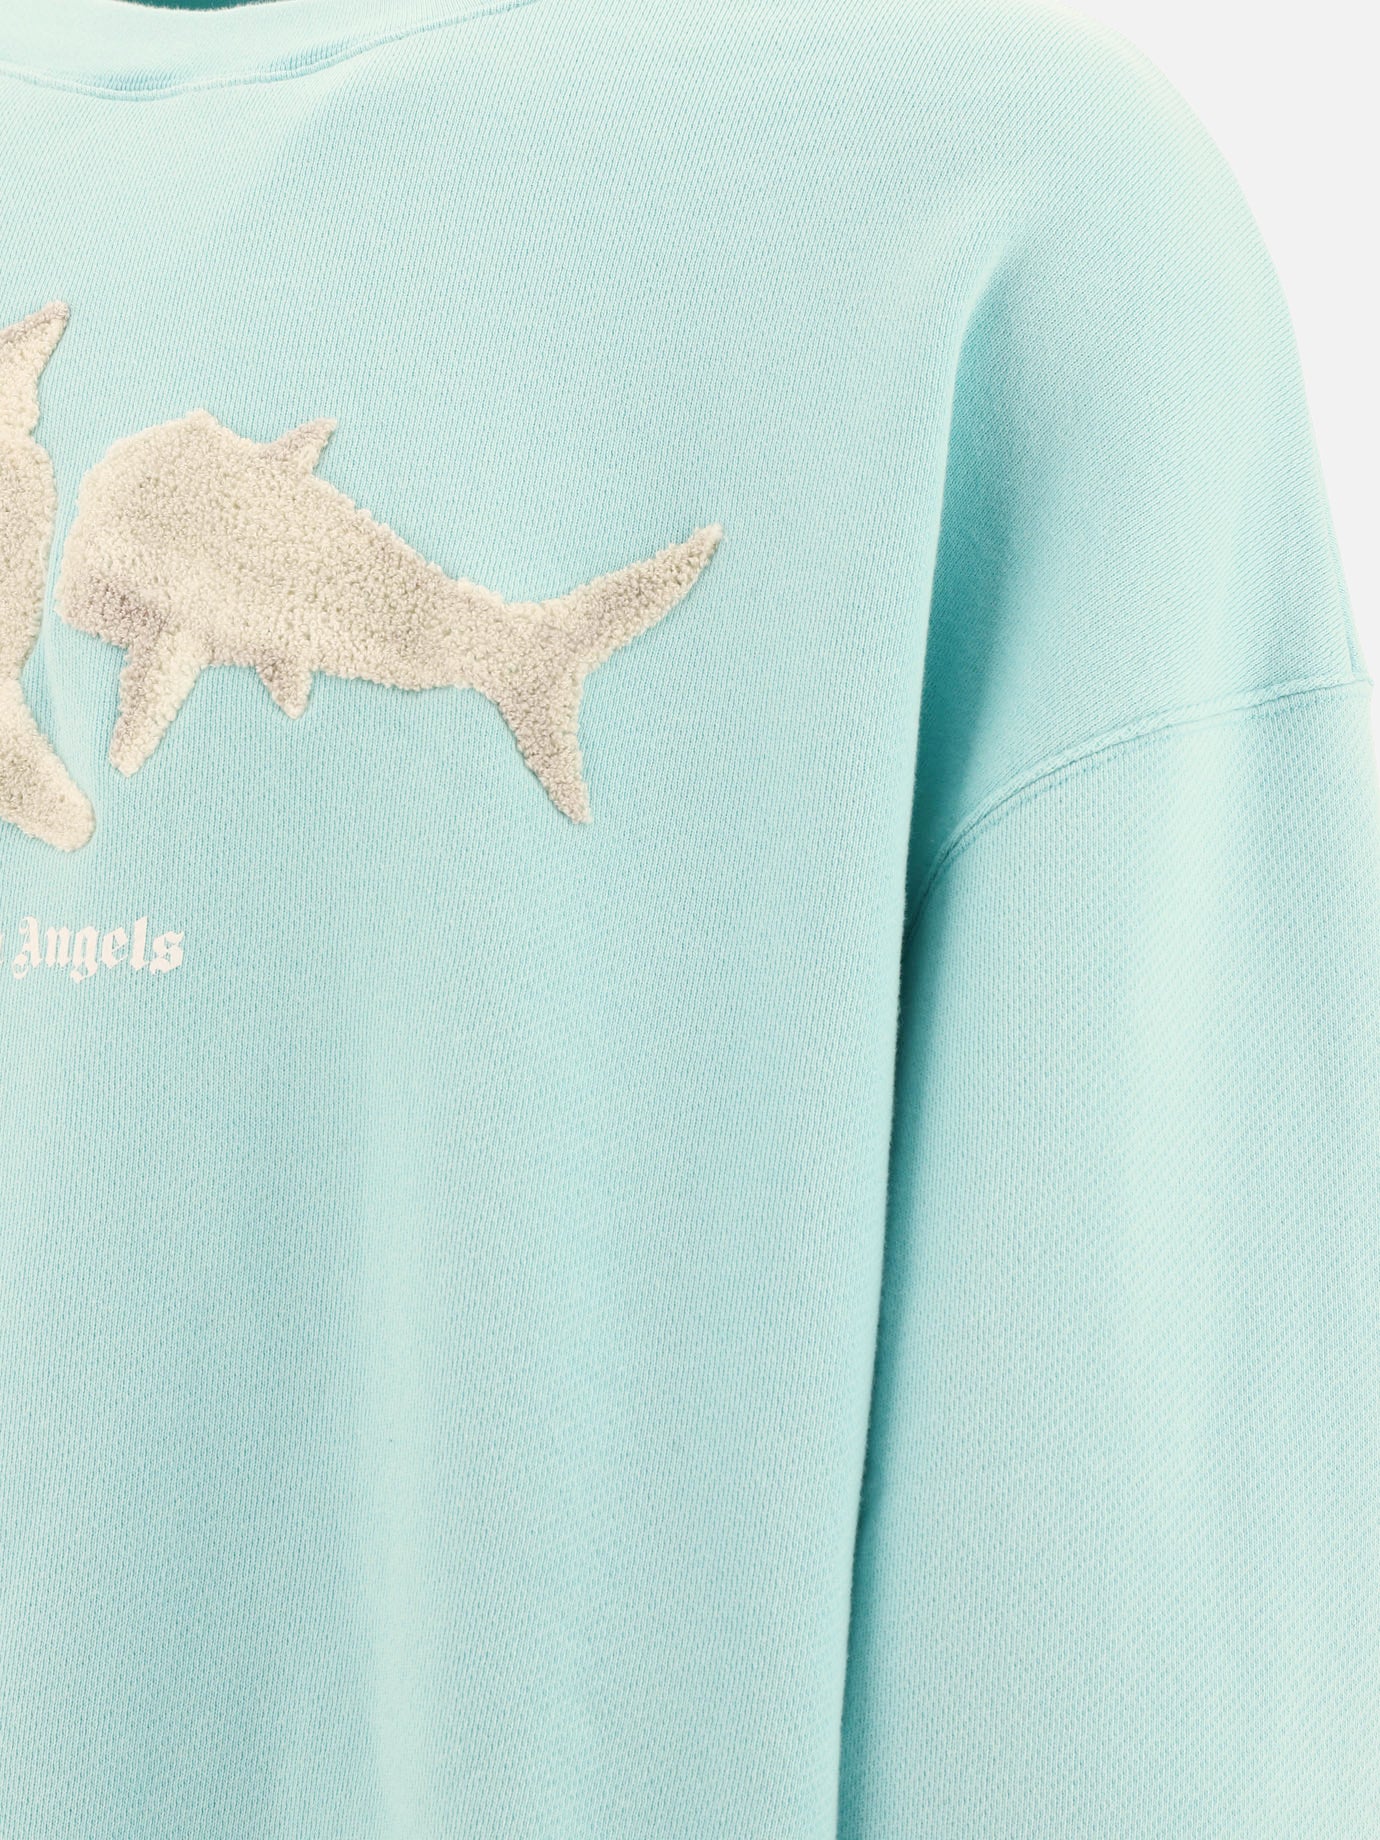 "White Shark" sweatshirt